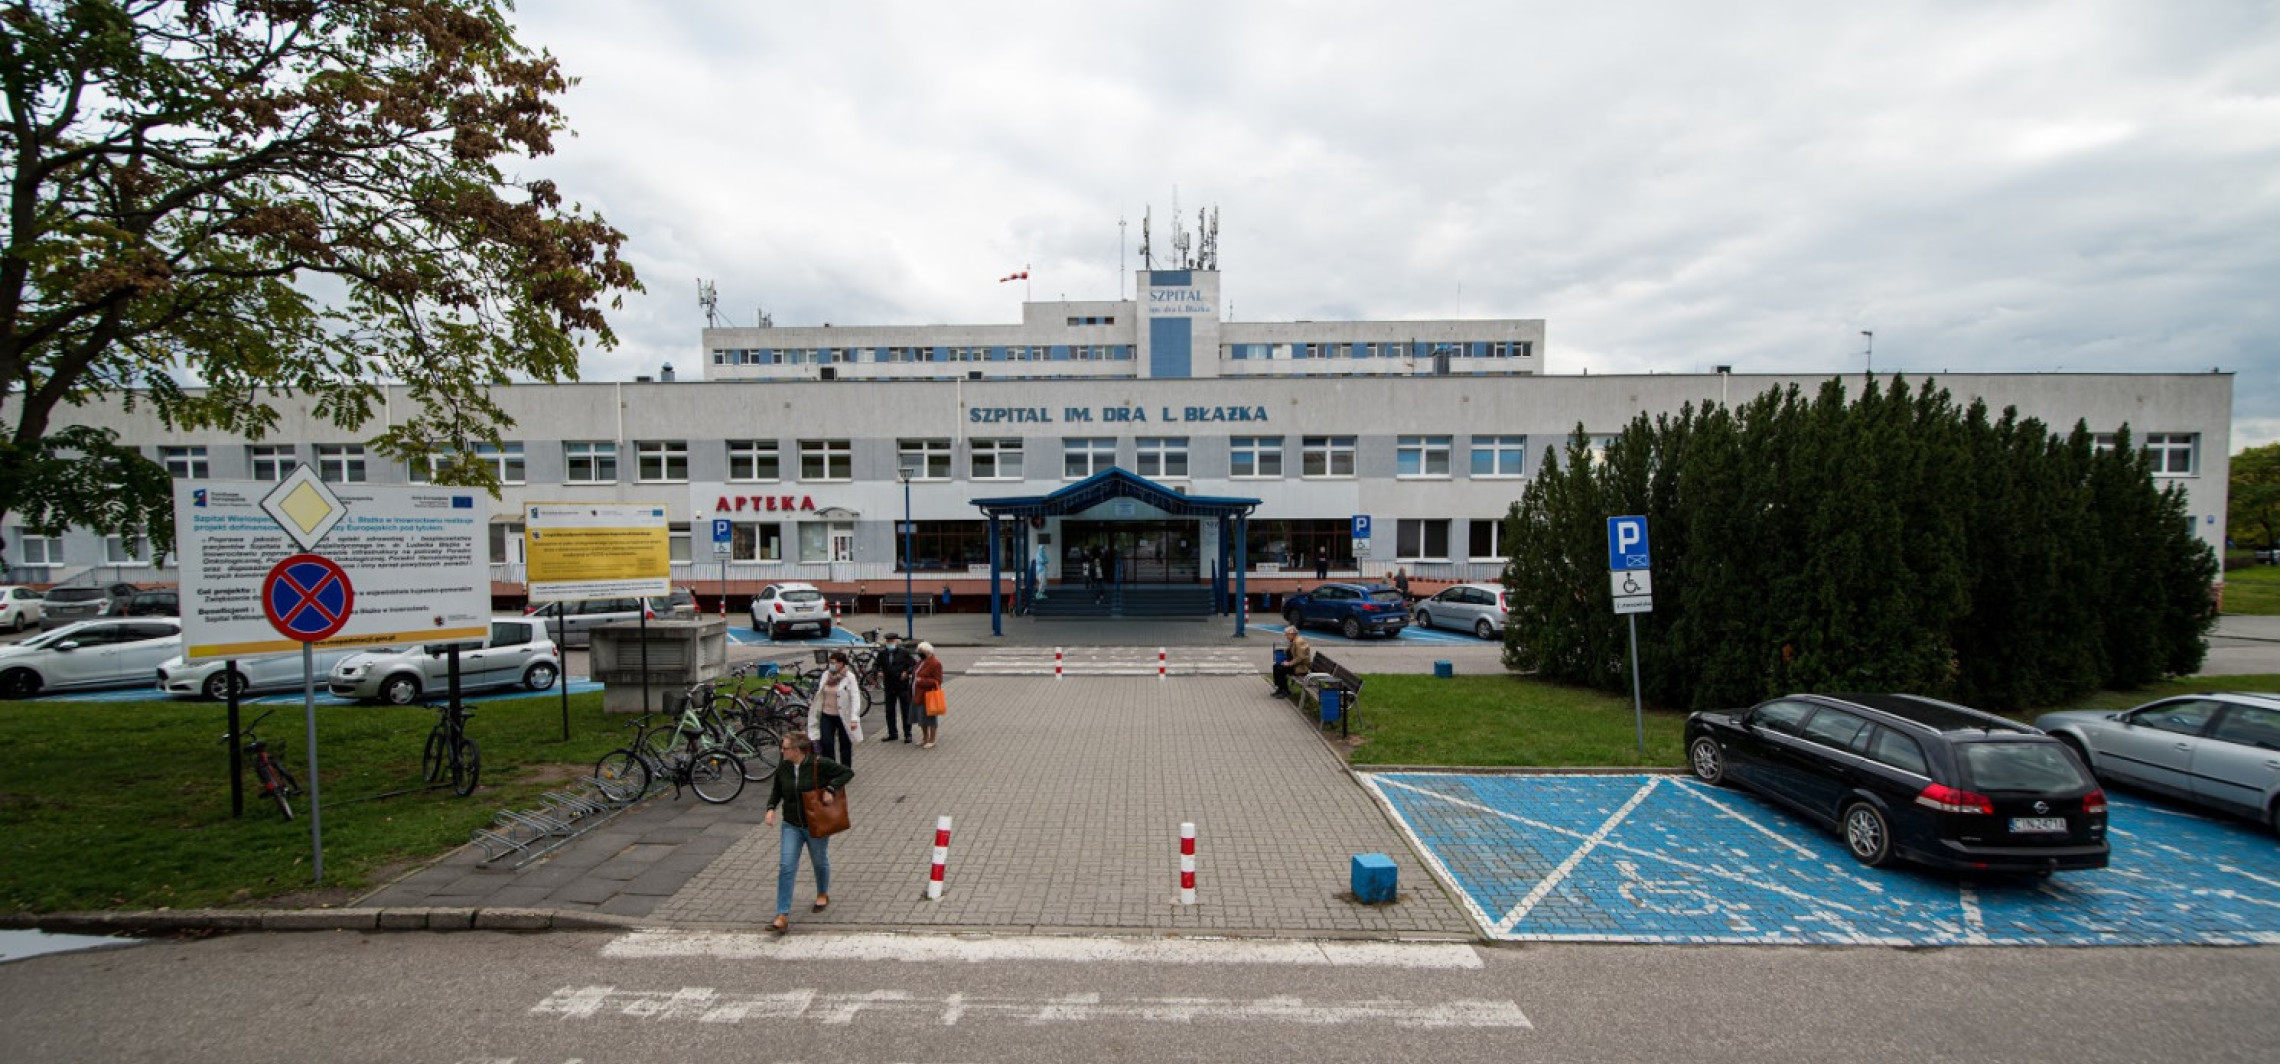 Inowrocław - Tego dnia przychodnia przyszpitalna będzie nieczynna